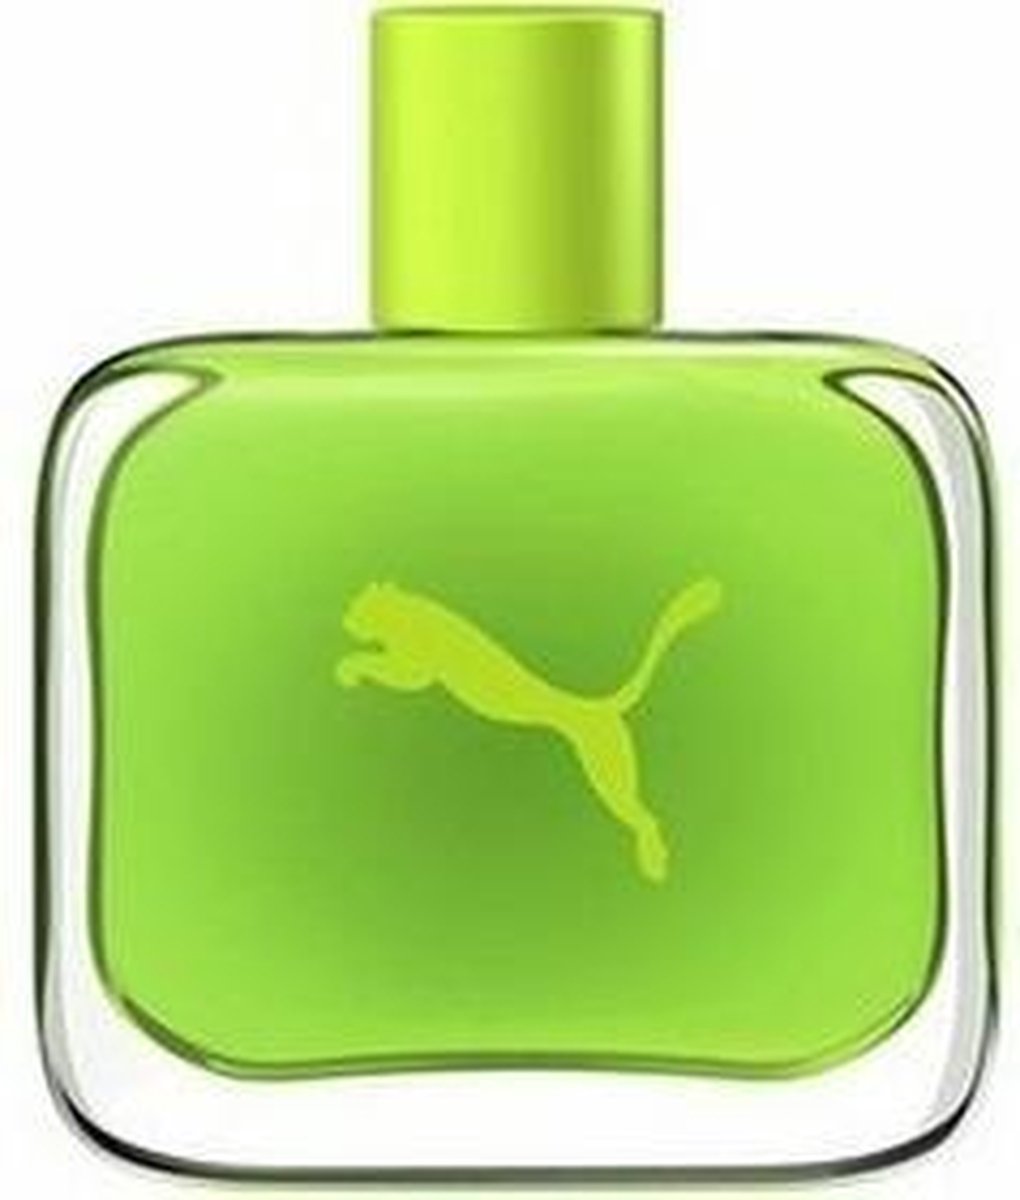 Puma Green by Puma 90 ml Eau De Toilette Spray